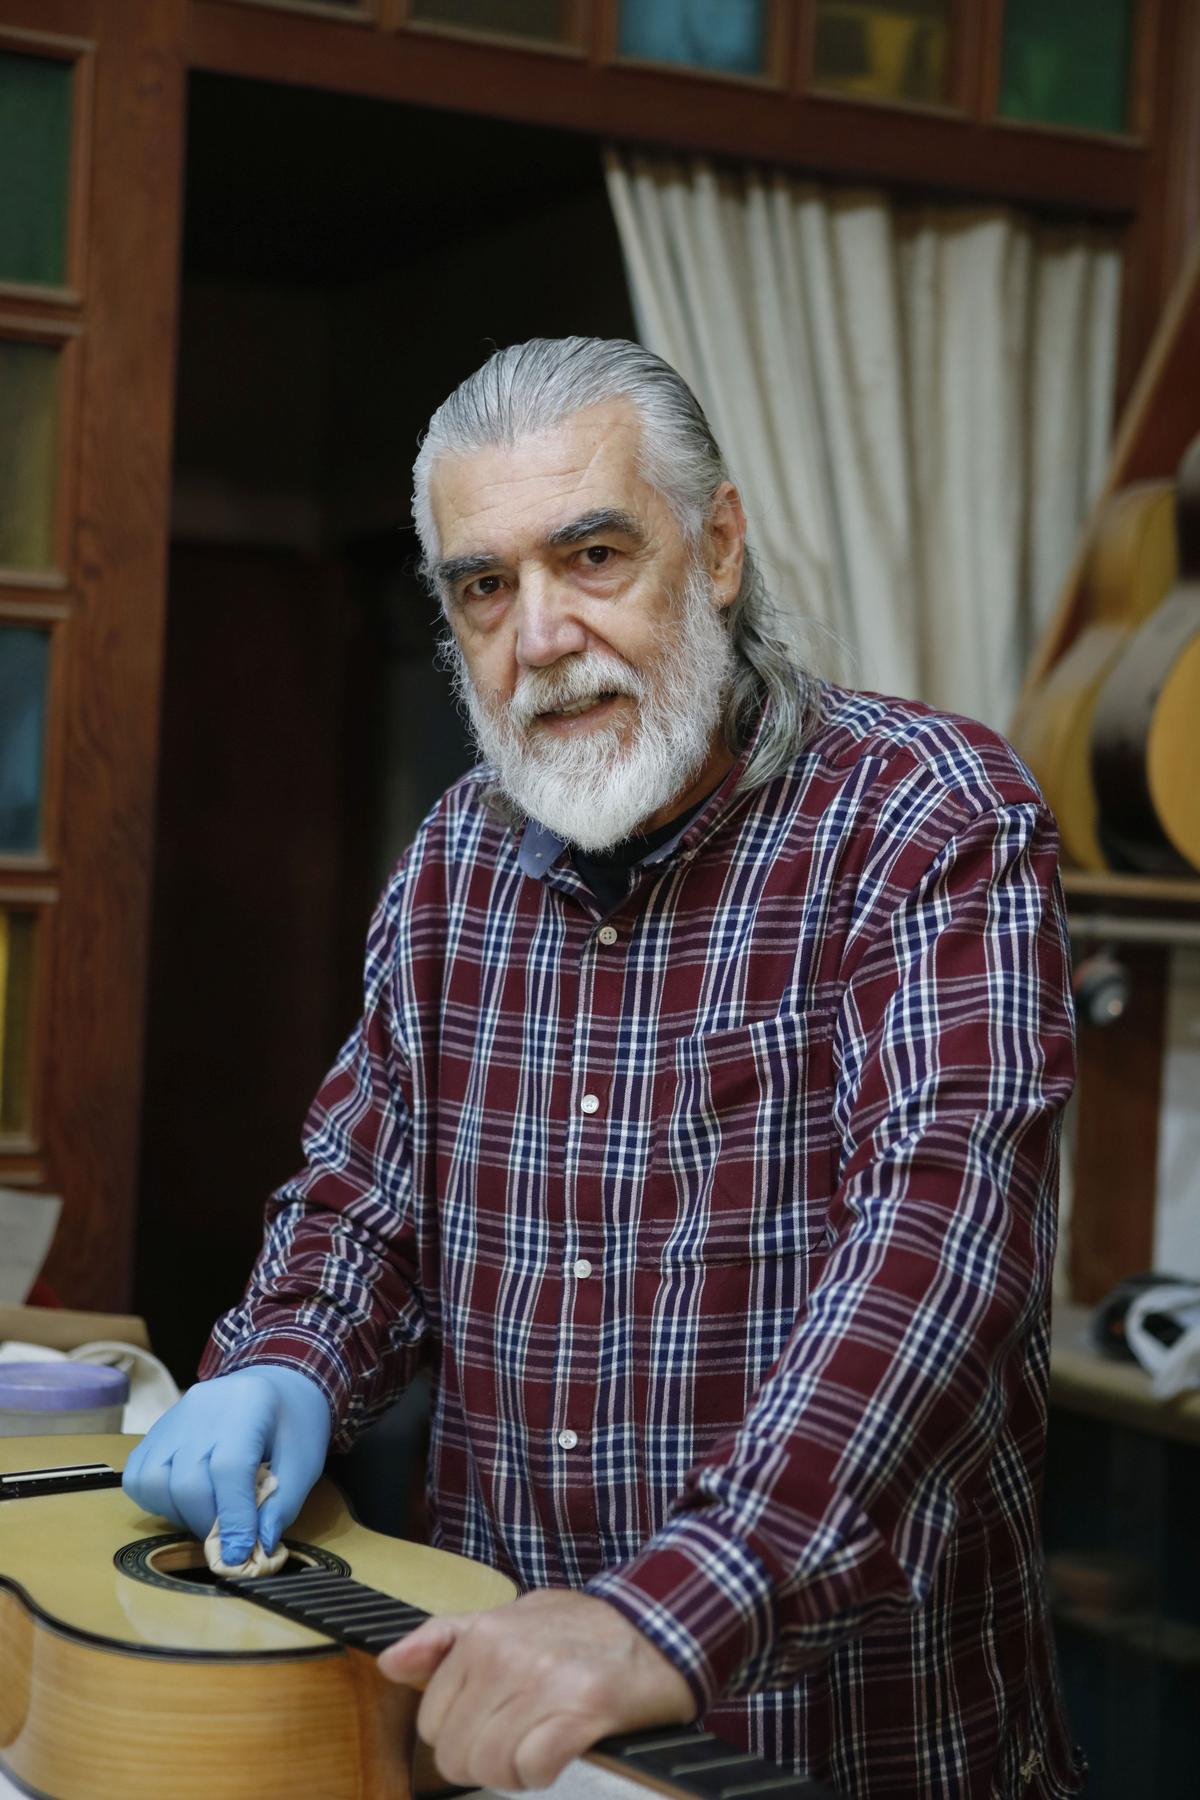 Der Gitarrenbauer Antonio Morales verwendet keine Lackierpistole, sondern lackiert in seiner Werkstatt in Palma aufwändig per Hand.